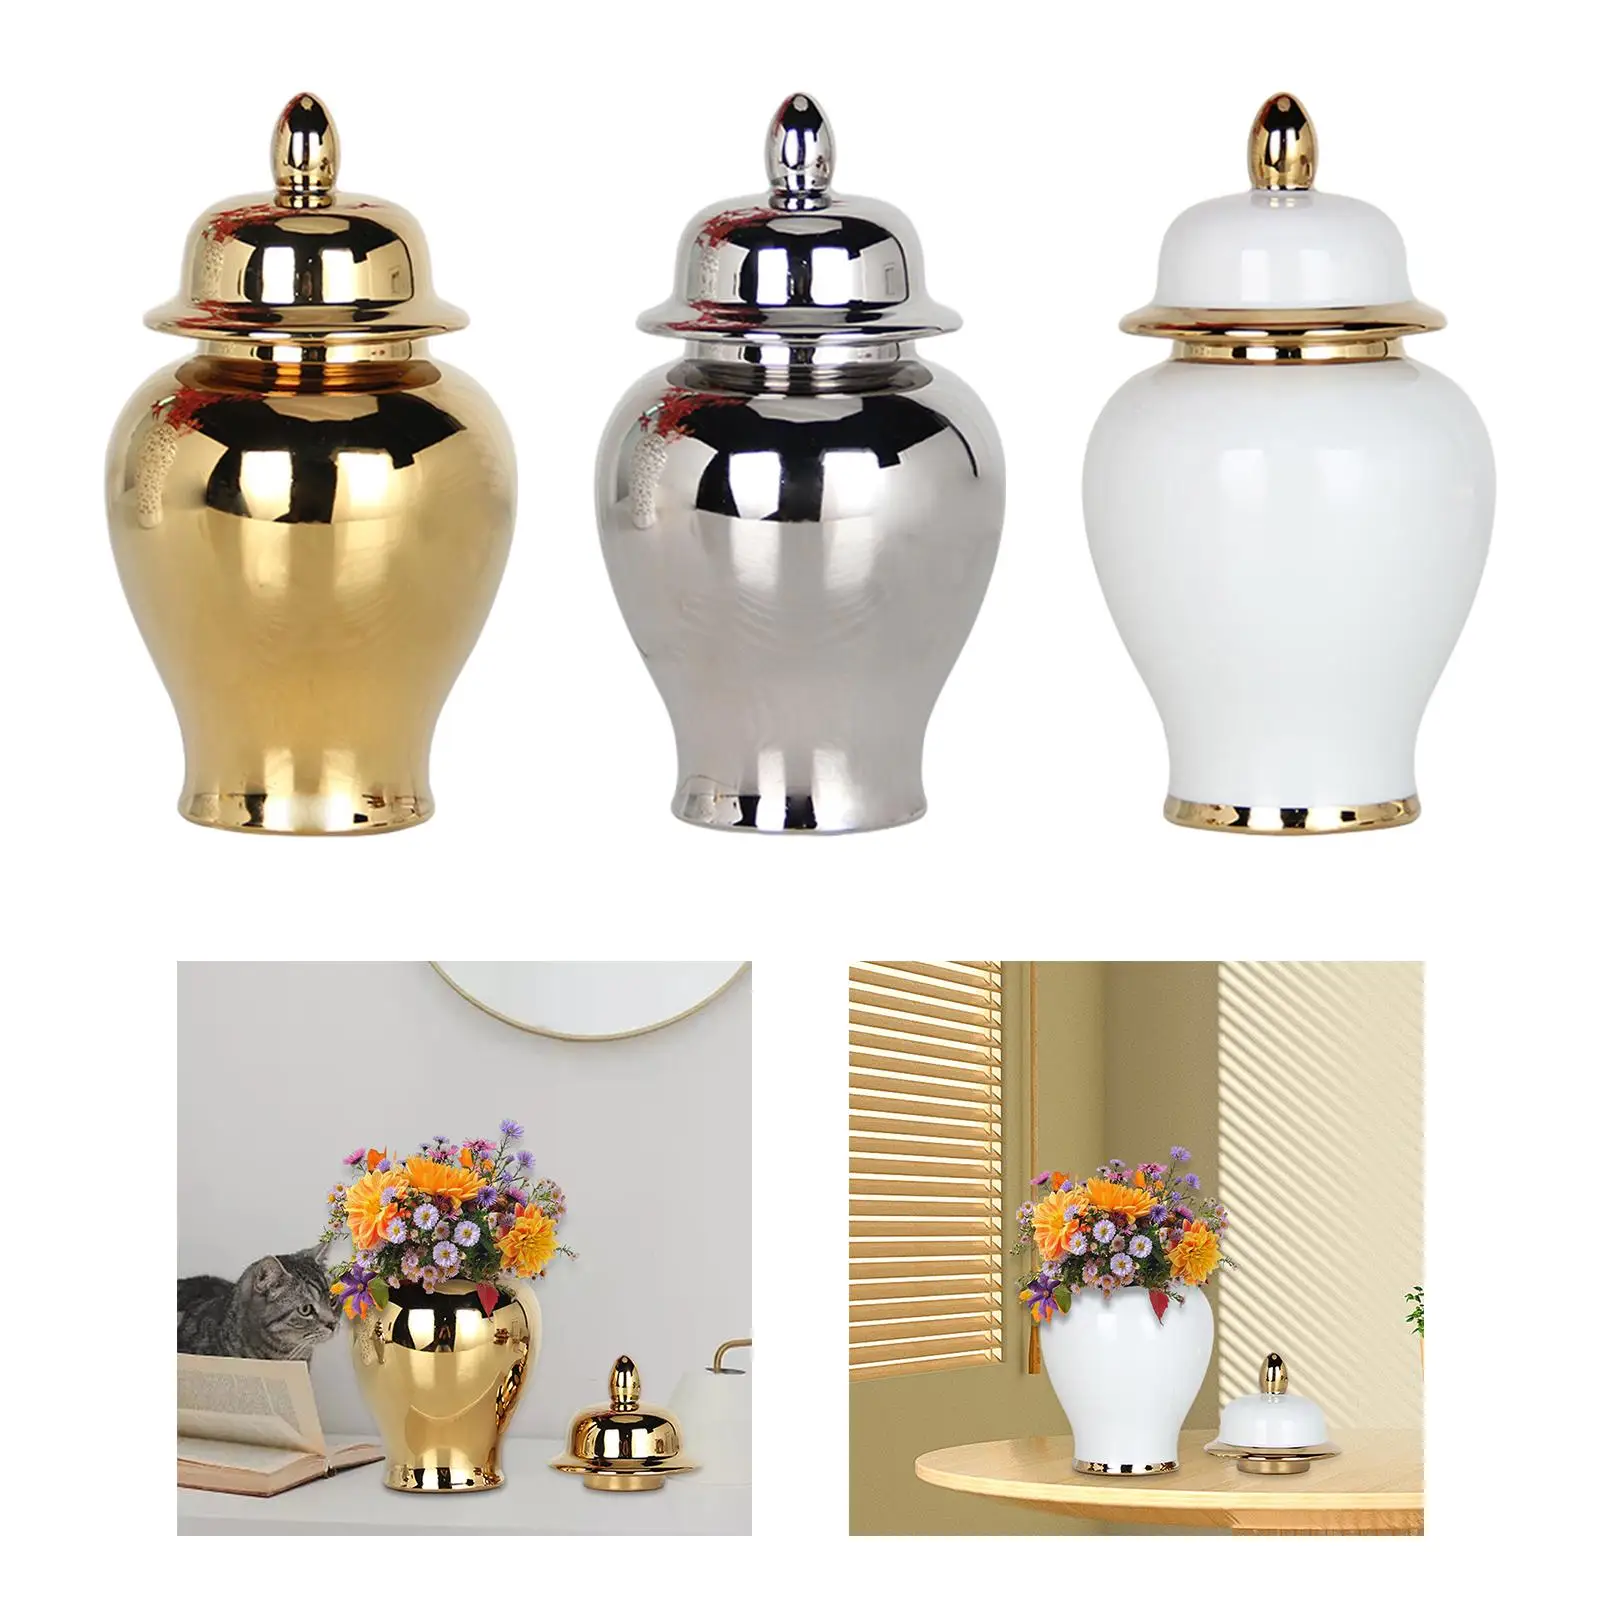 Ceramic Vase Plants Holder Decoration Chinese Display Organizer Porcelain Ginger Jar for Storage Tank Bedroom Floral Home Party